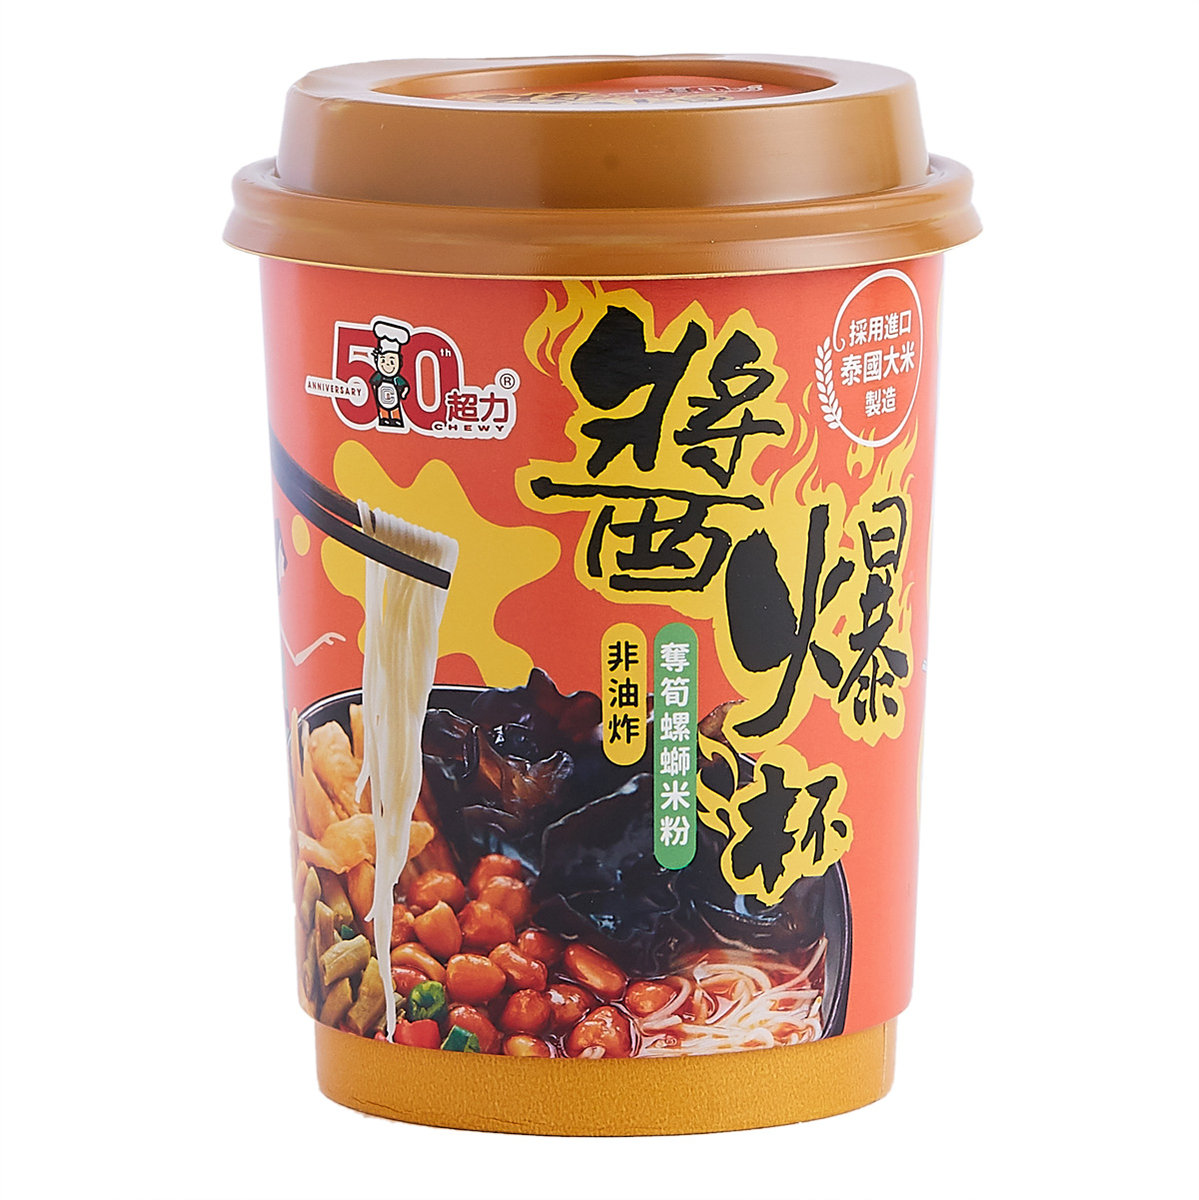 香港超力 - 酱爆杯 - 夺笋螺螄米粉 (变形金刚包装/新旧随机发货)